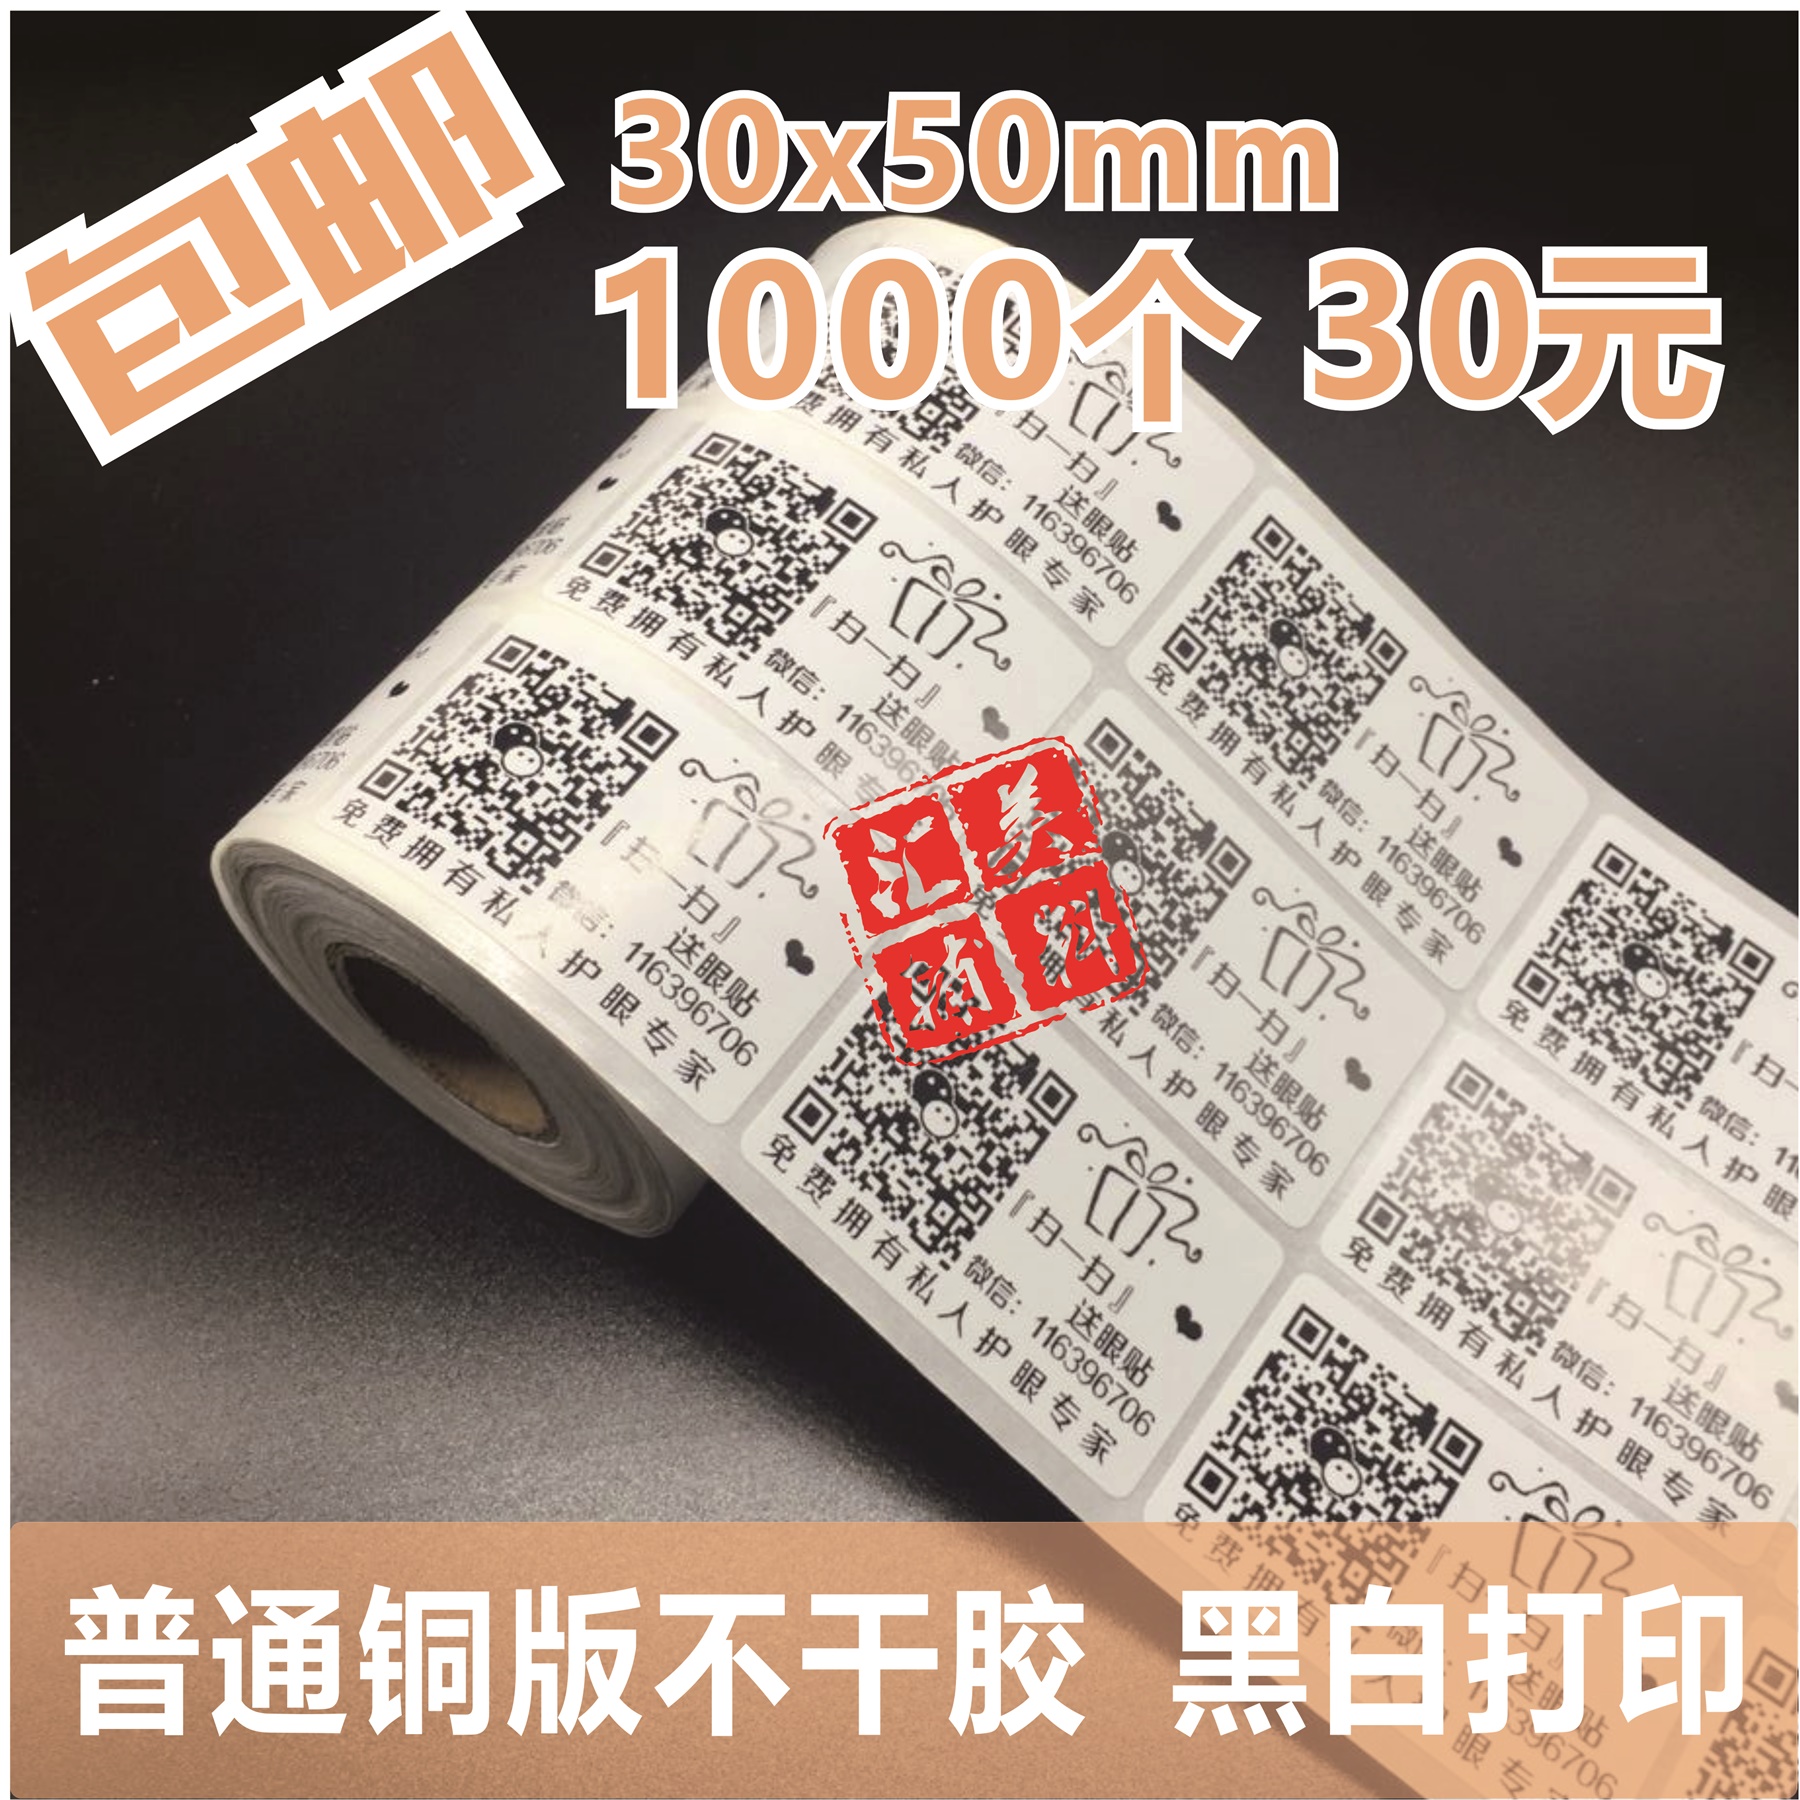 淘宝微淘logo 二维码贴纸不干胶贴纸标签定做打印30x50mm包邮定制